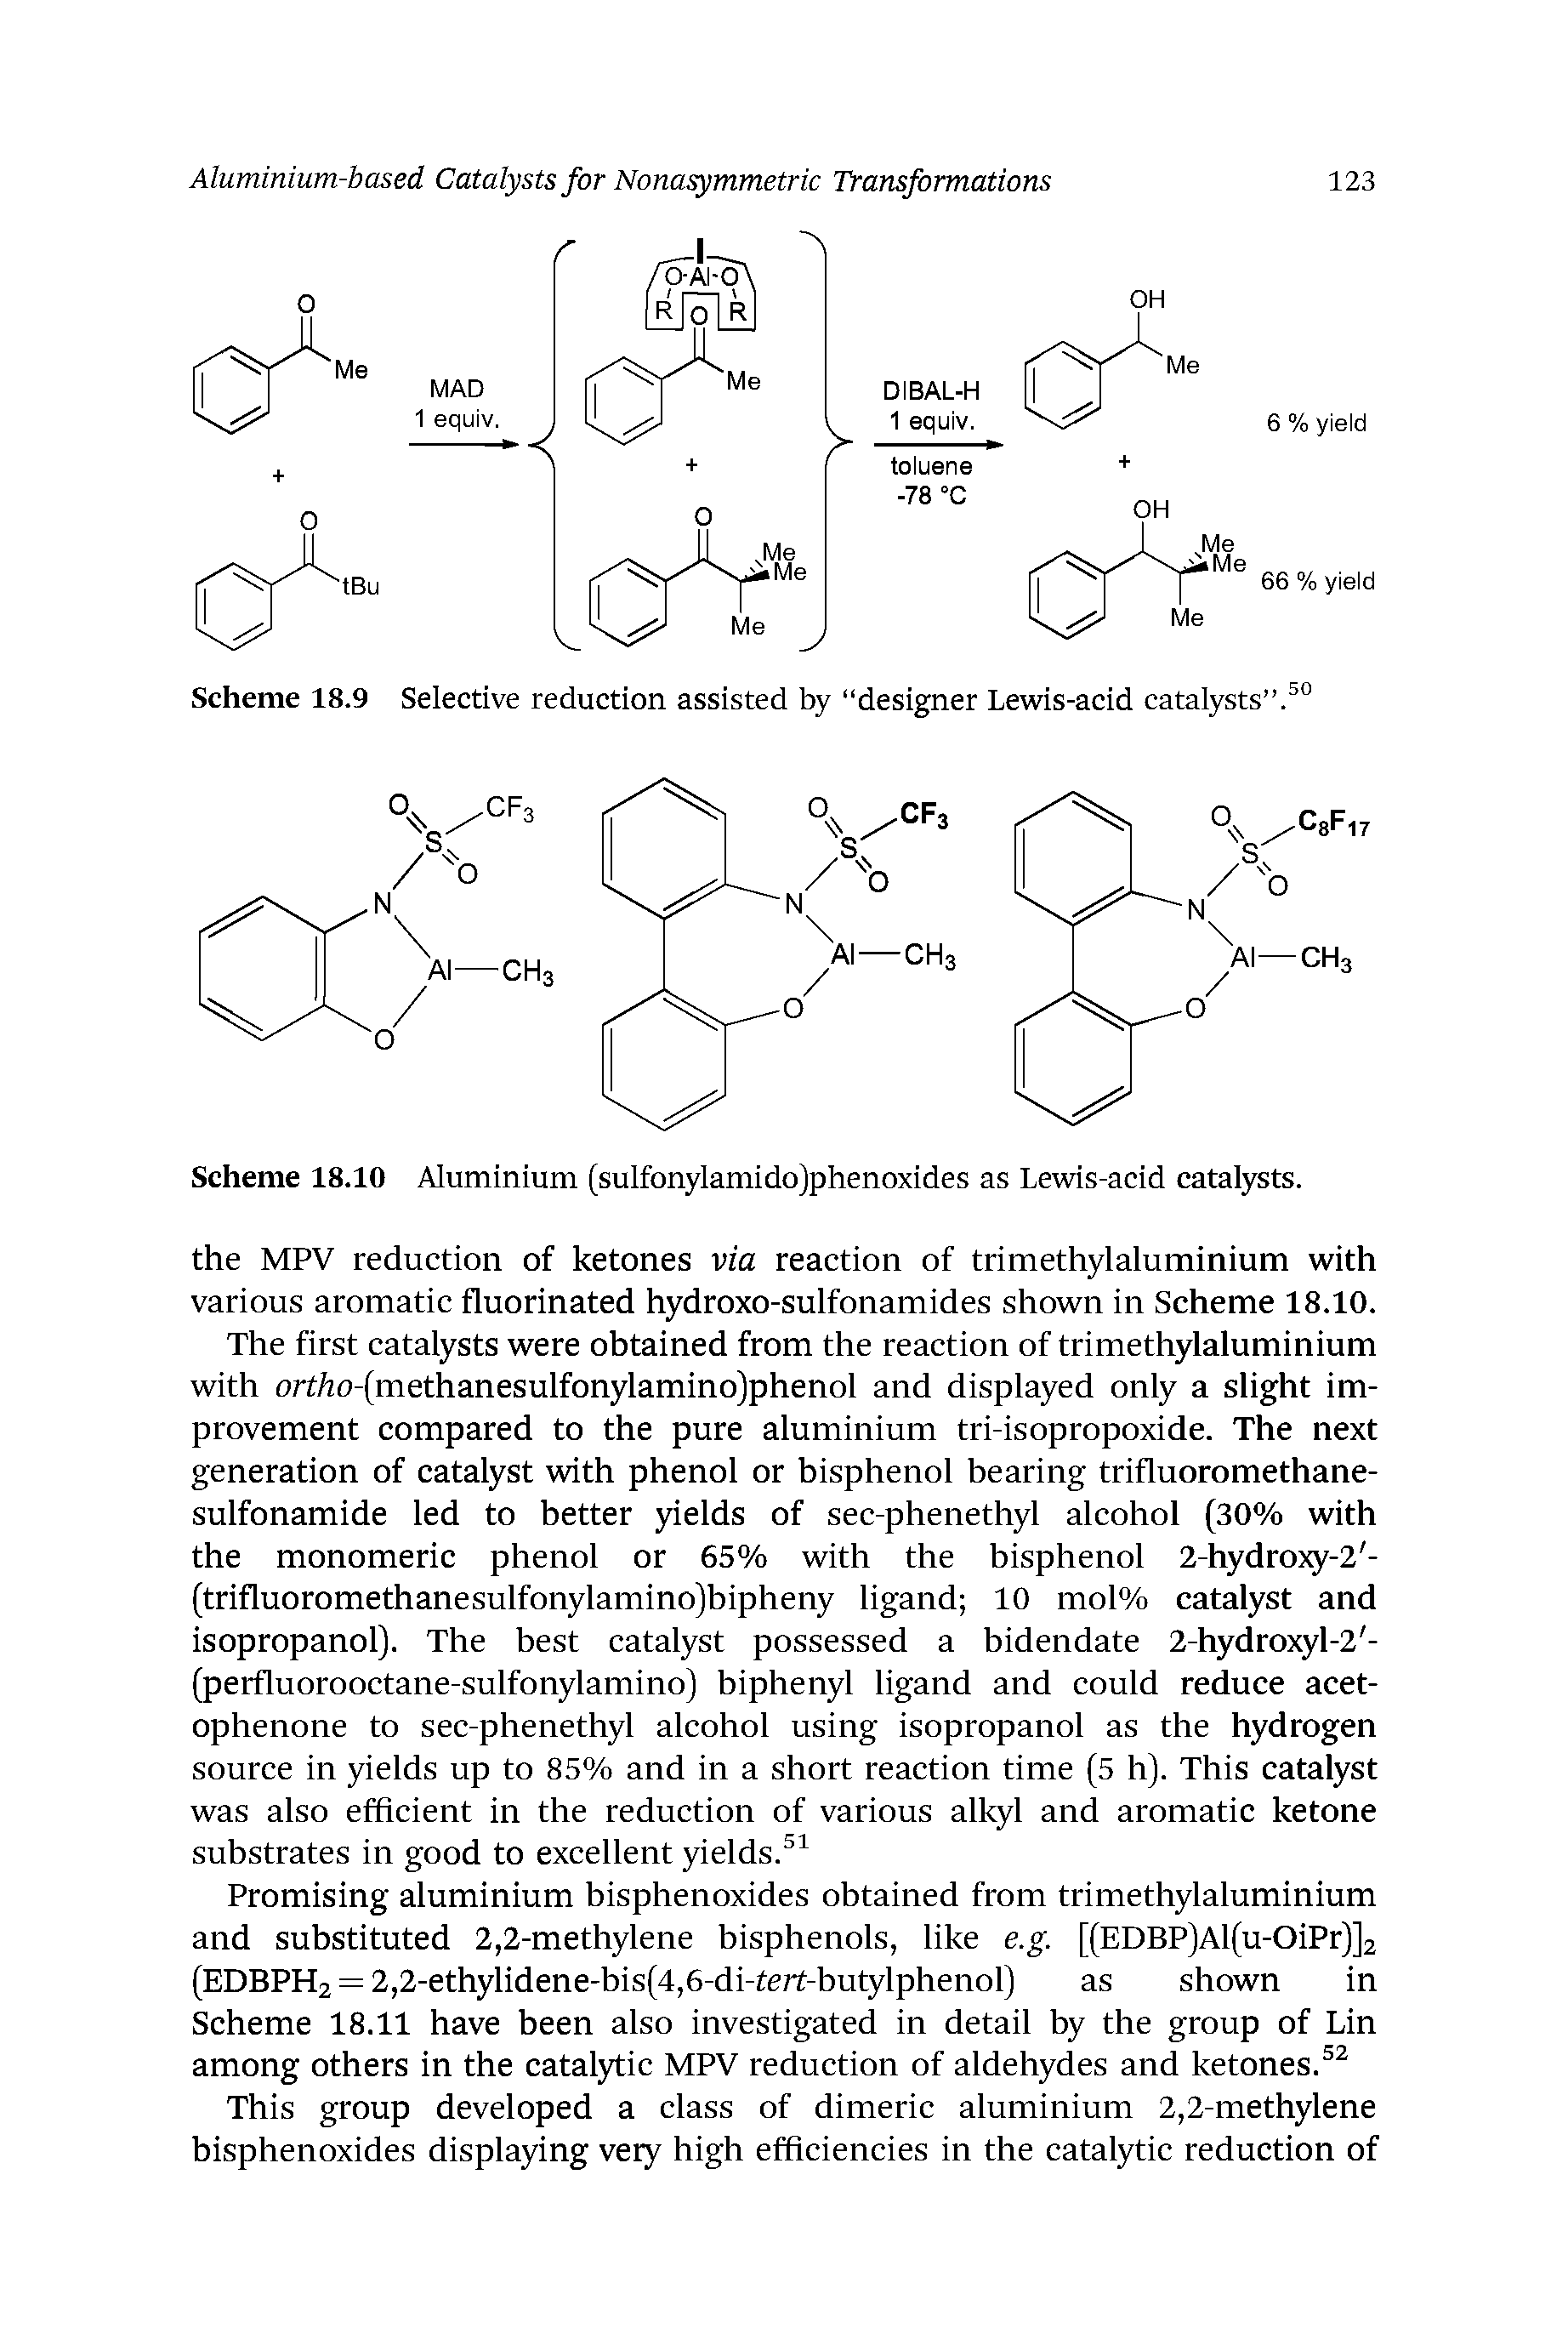 Scheme 18.10 Aluminium (sulfonylamido)phenoxides as Lewis-acid catalysts.